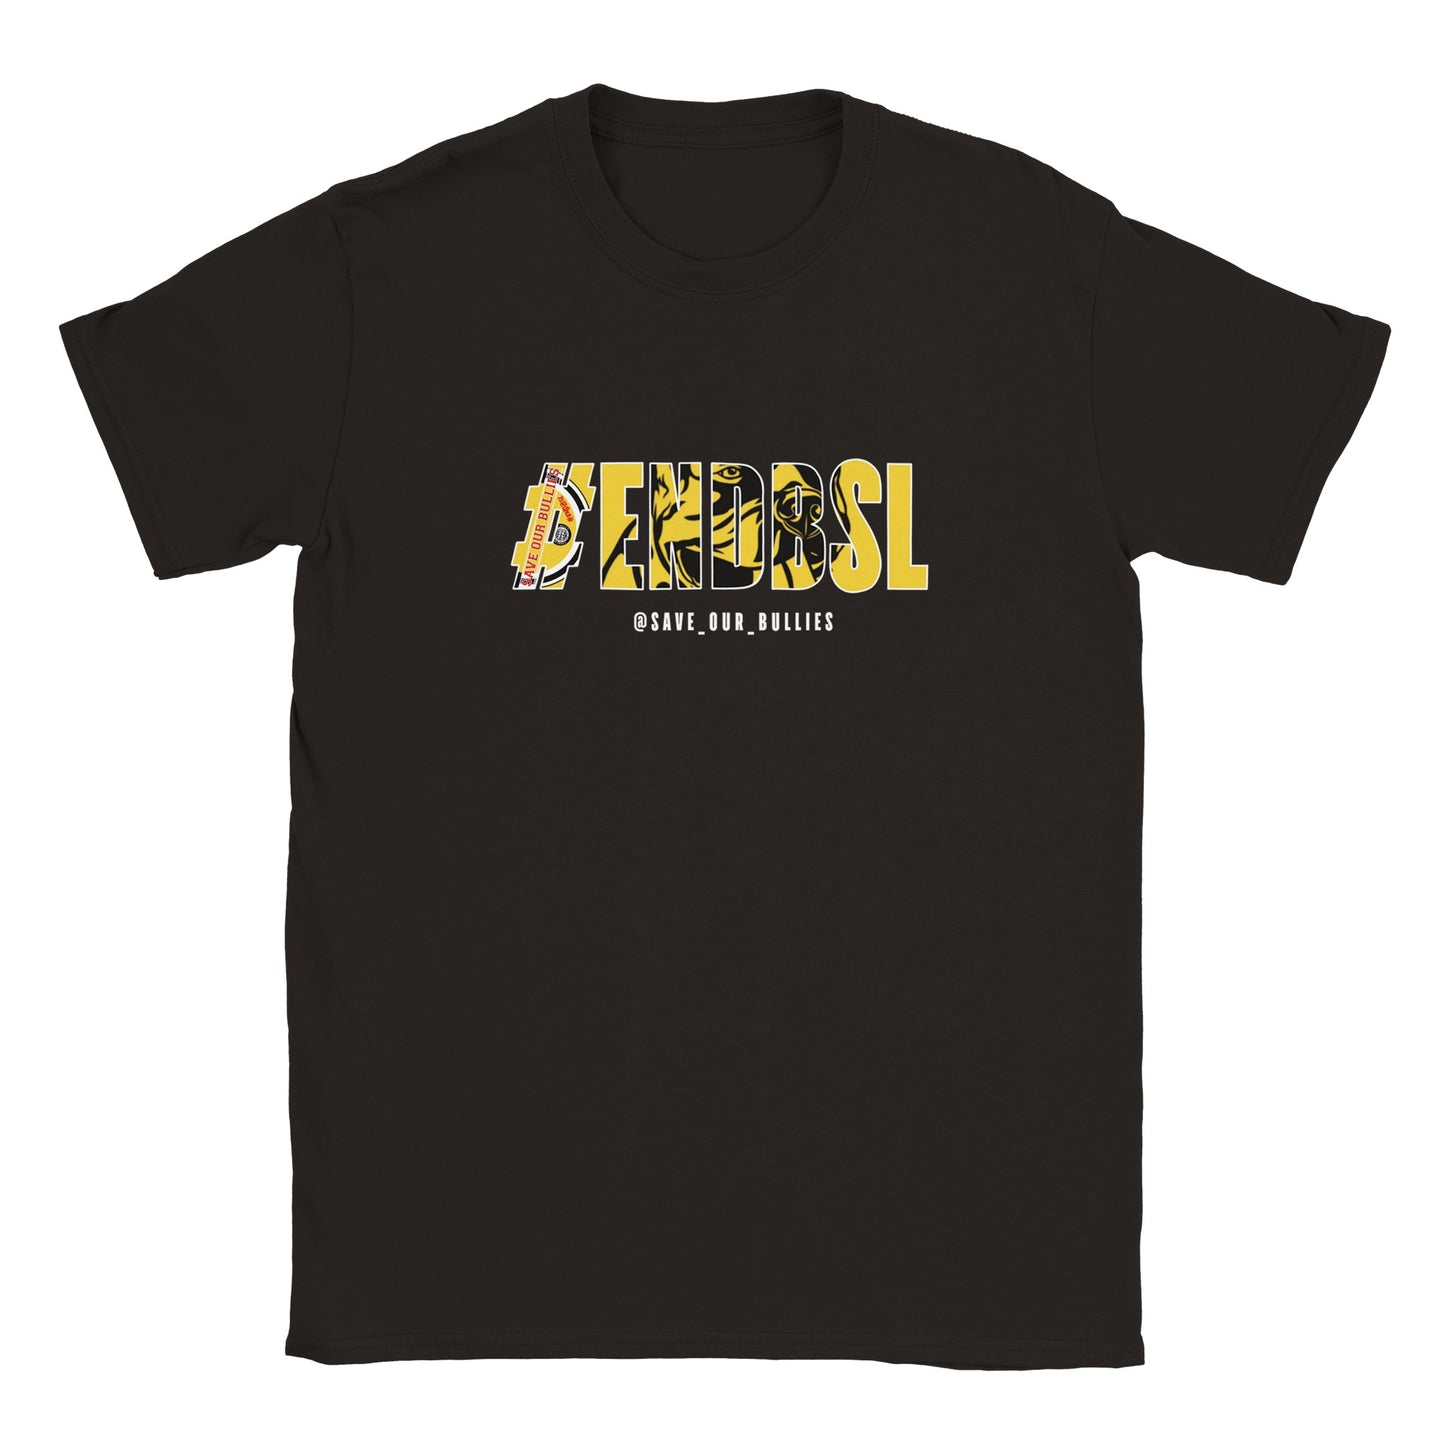 #ENDBSL Crewneck T-shirt